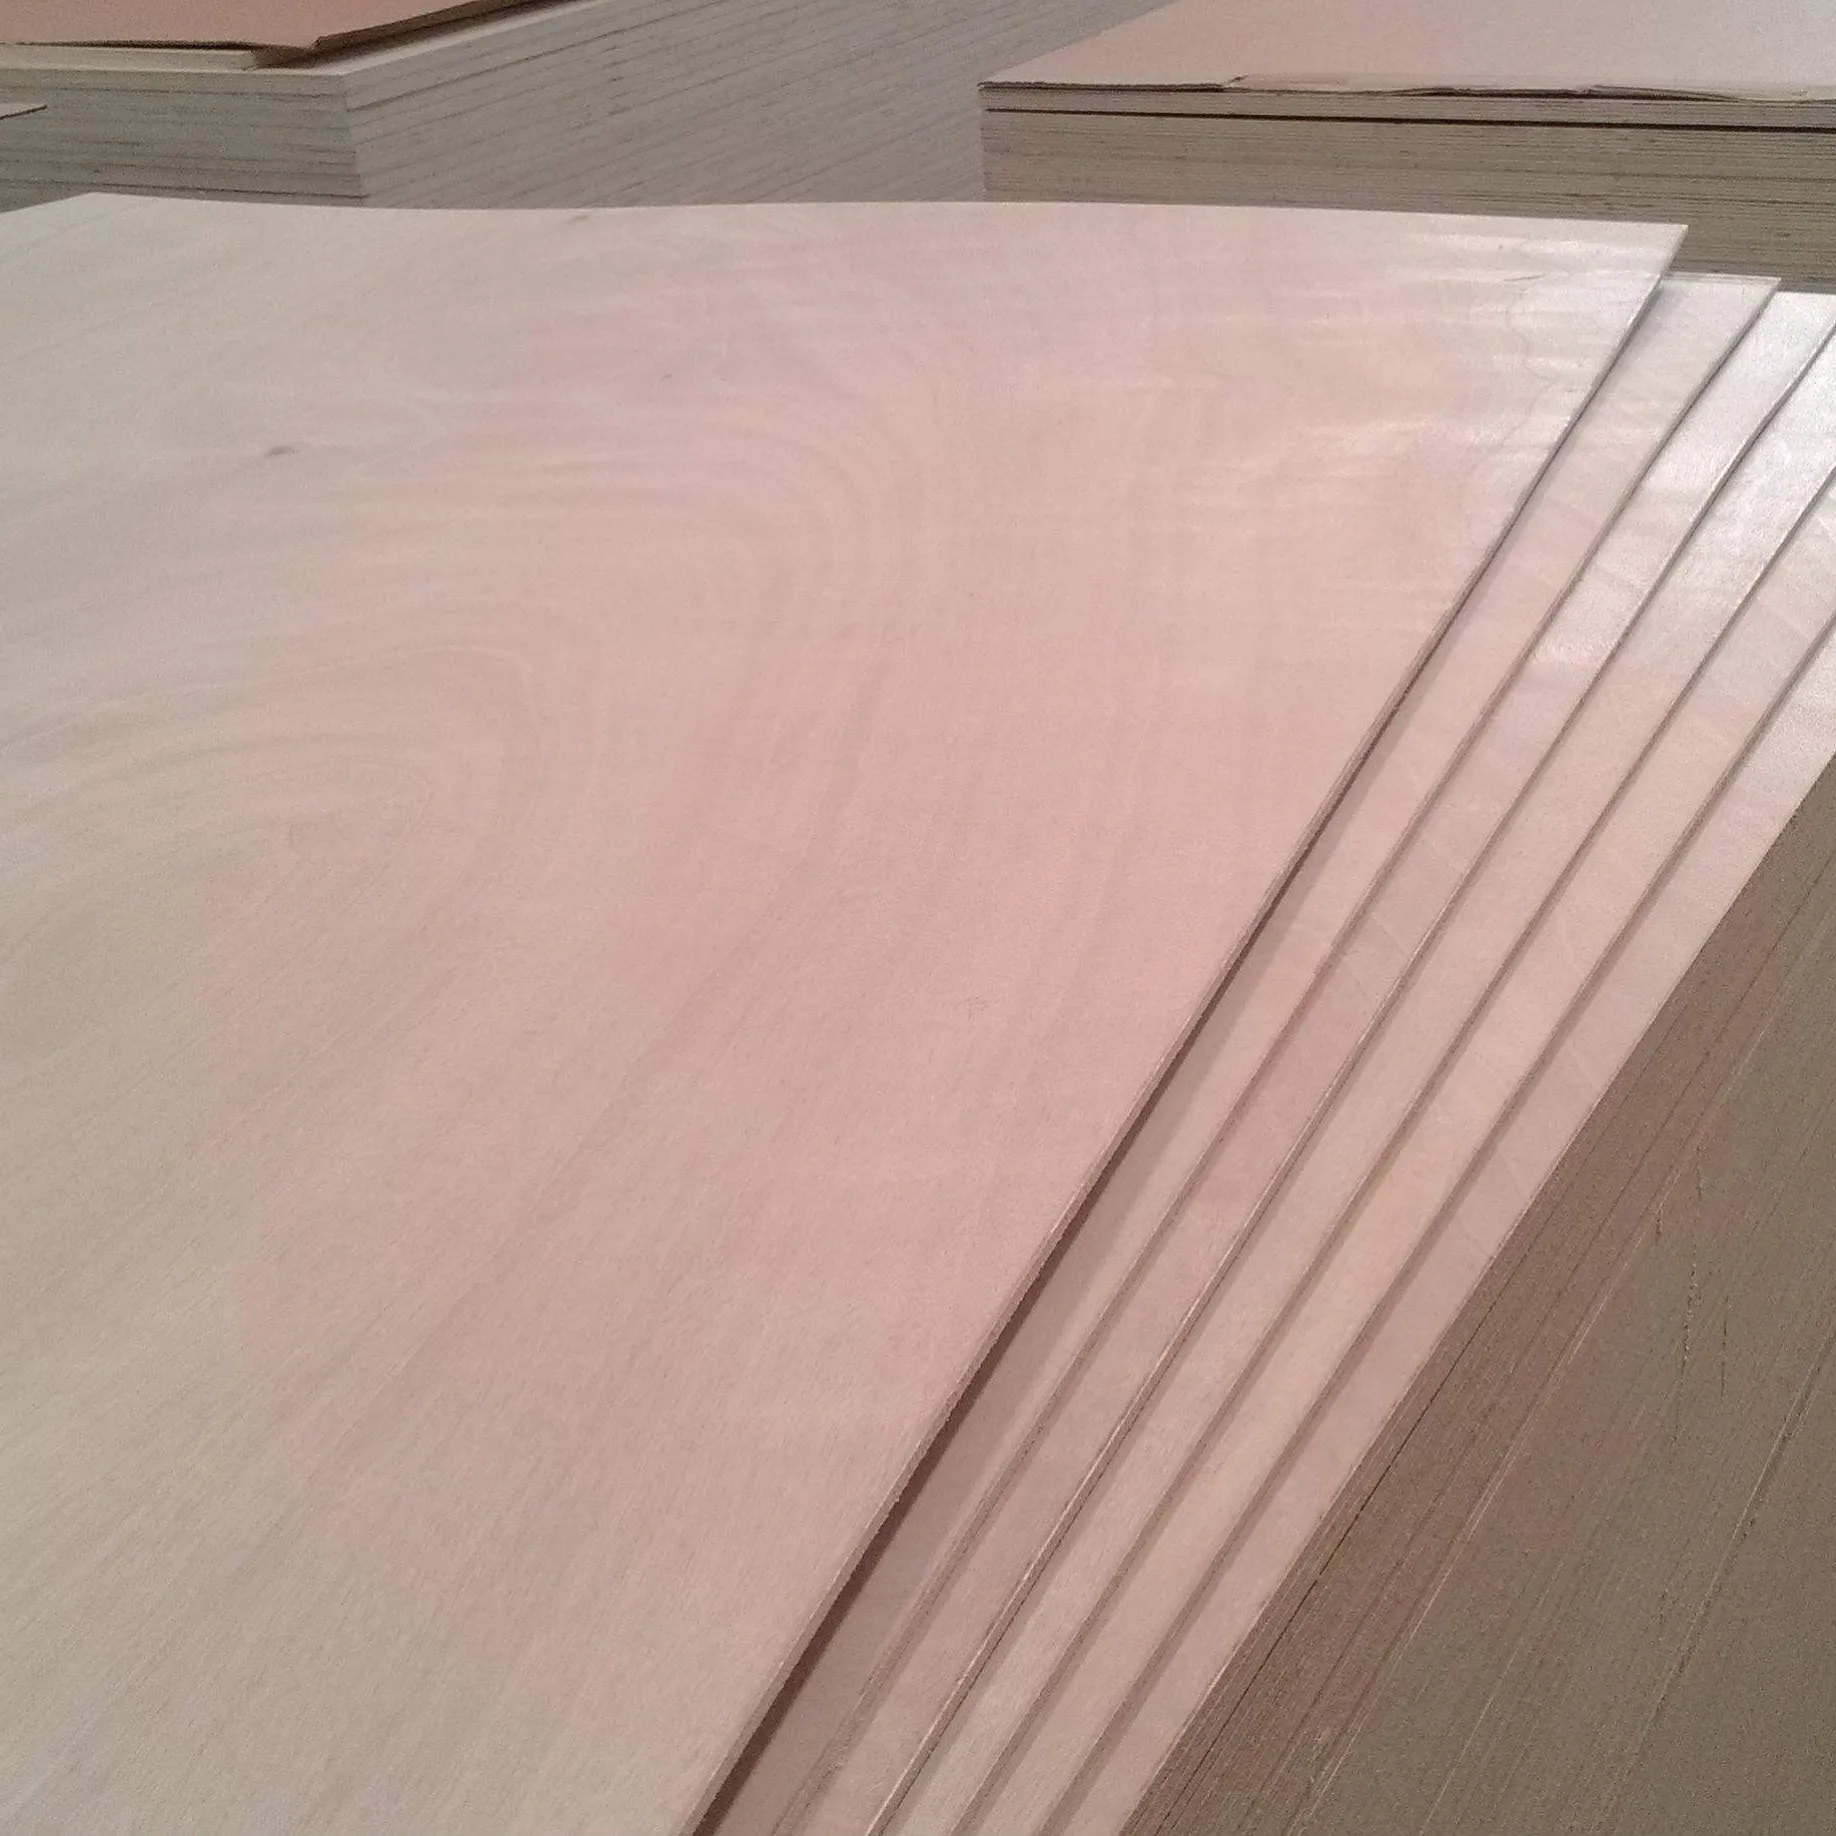 Panel de madera de caoba para muebles, hoja laminada de abedul